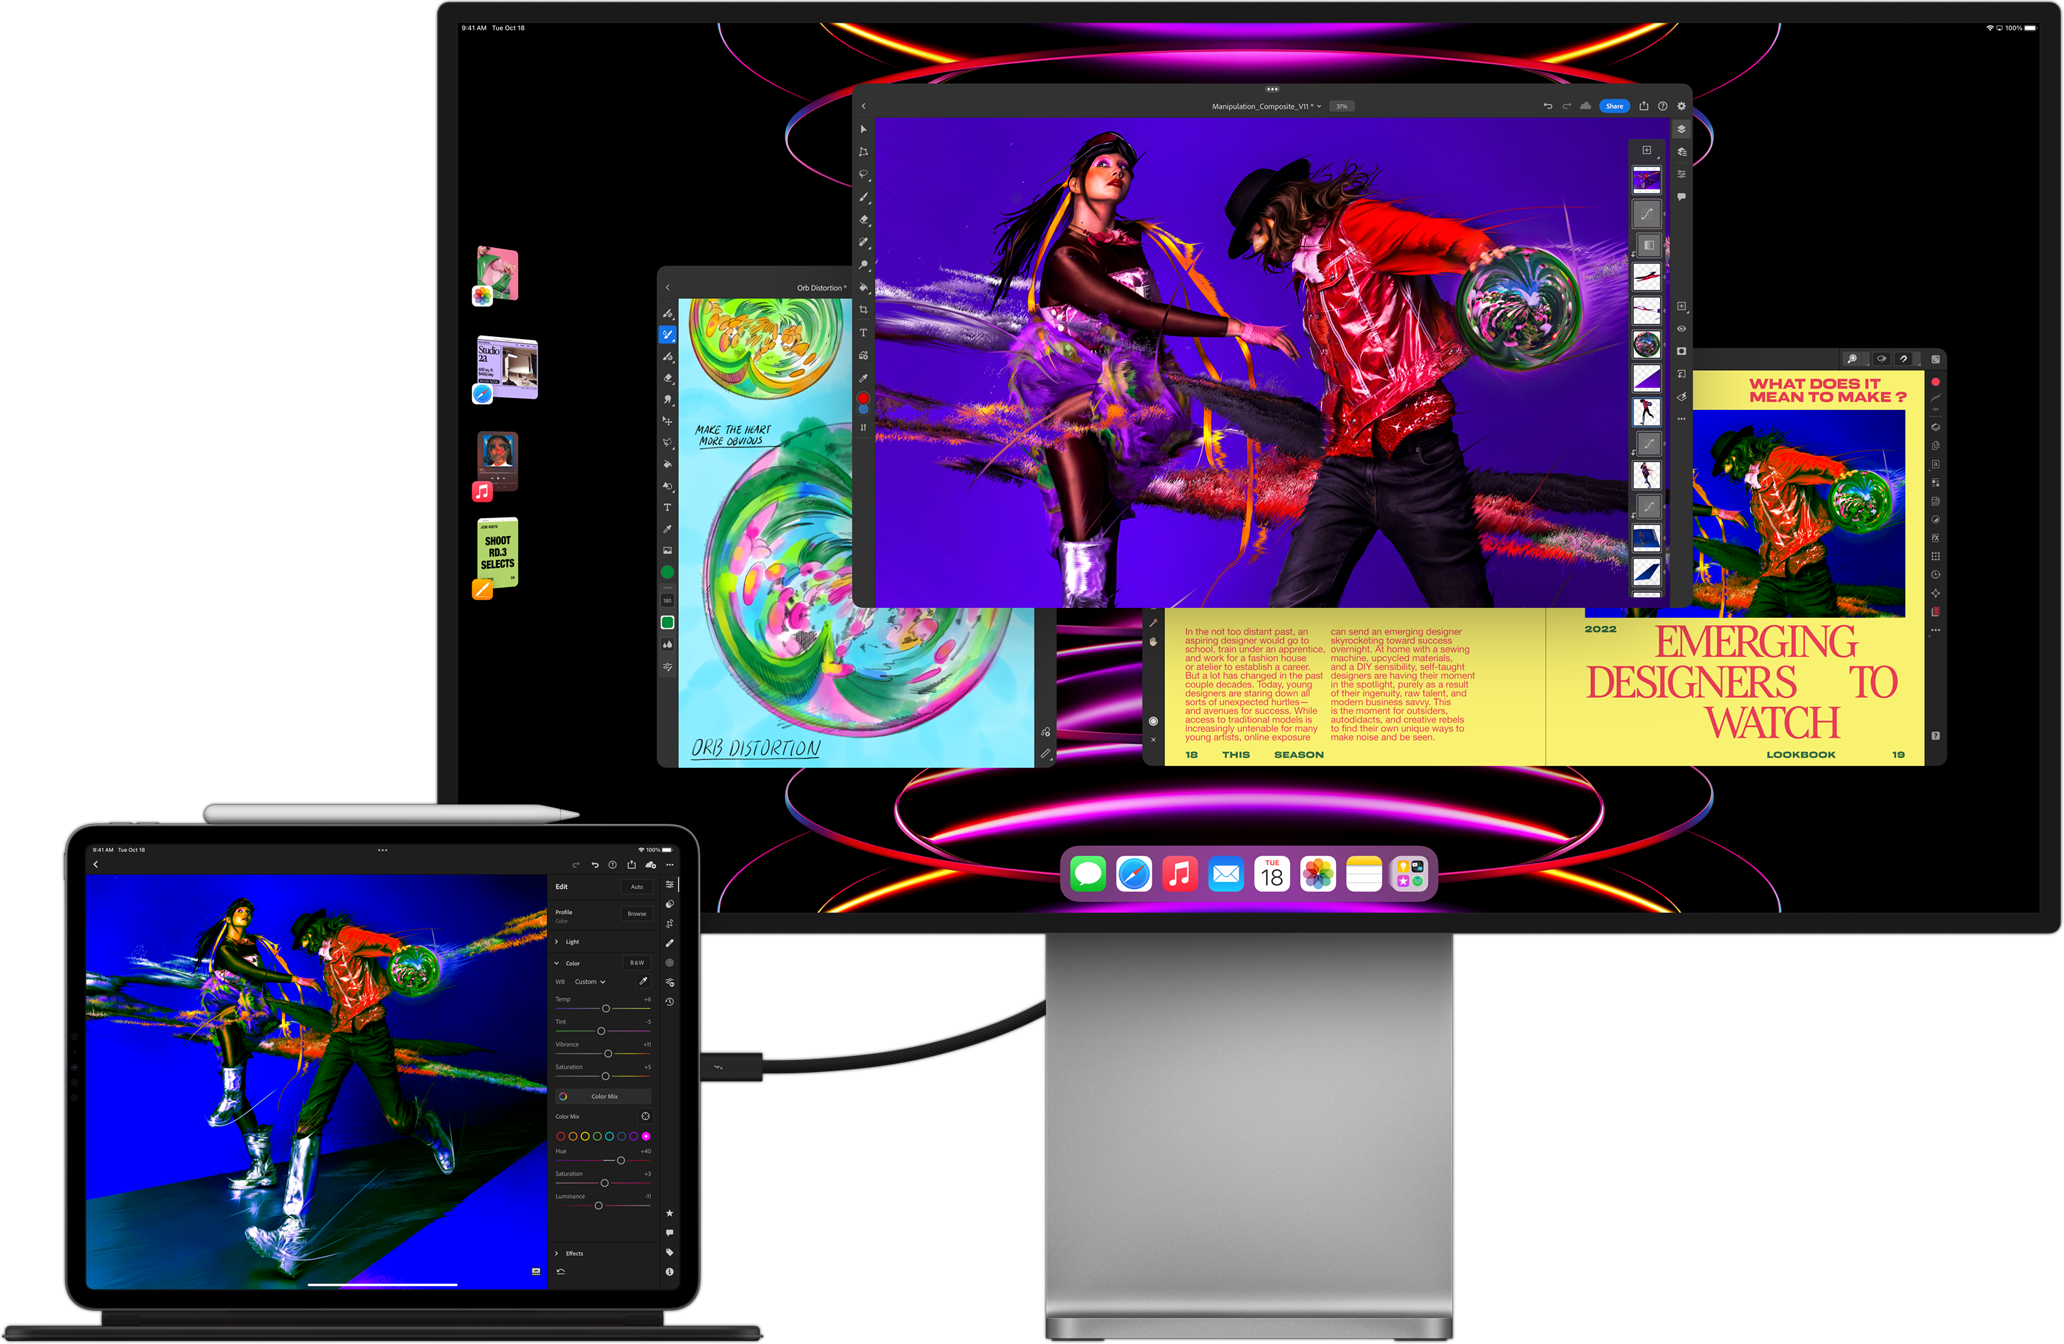 iPad Pro affichant l’app Adobe Lightroom connecté à un écran externe affichant le mode multitâche avec Stage Manager